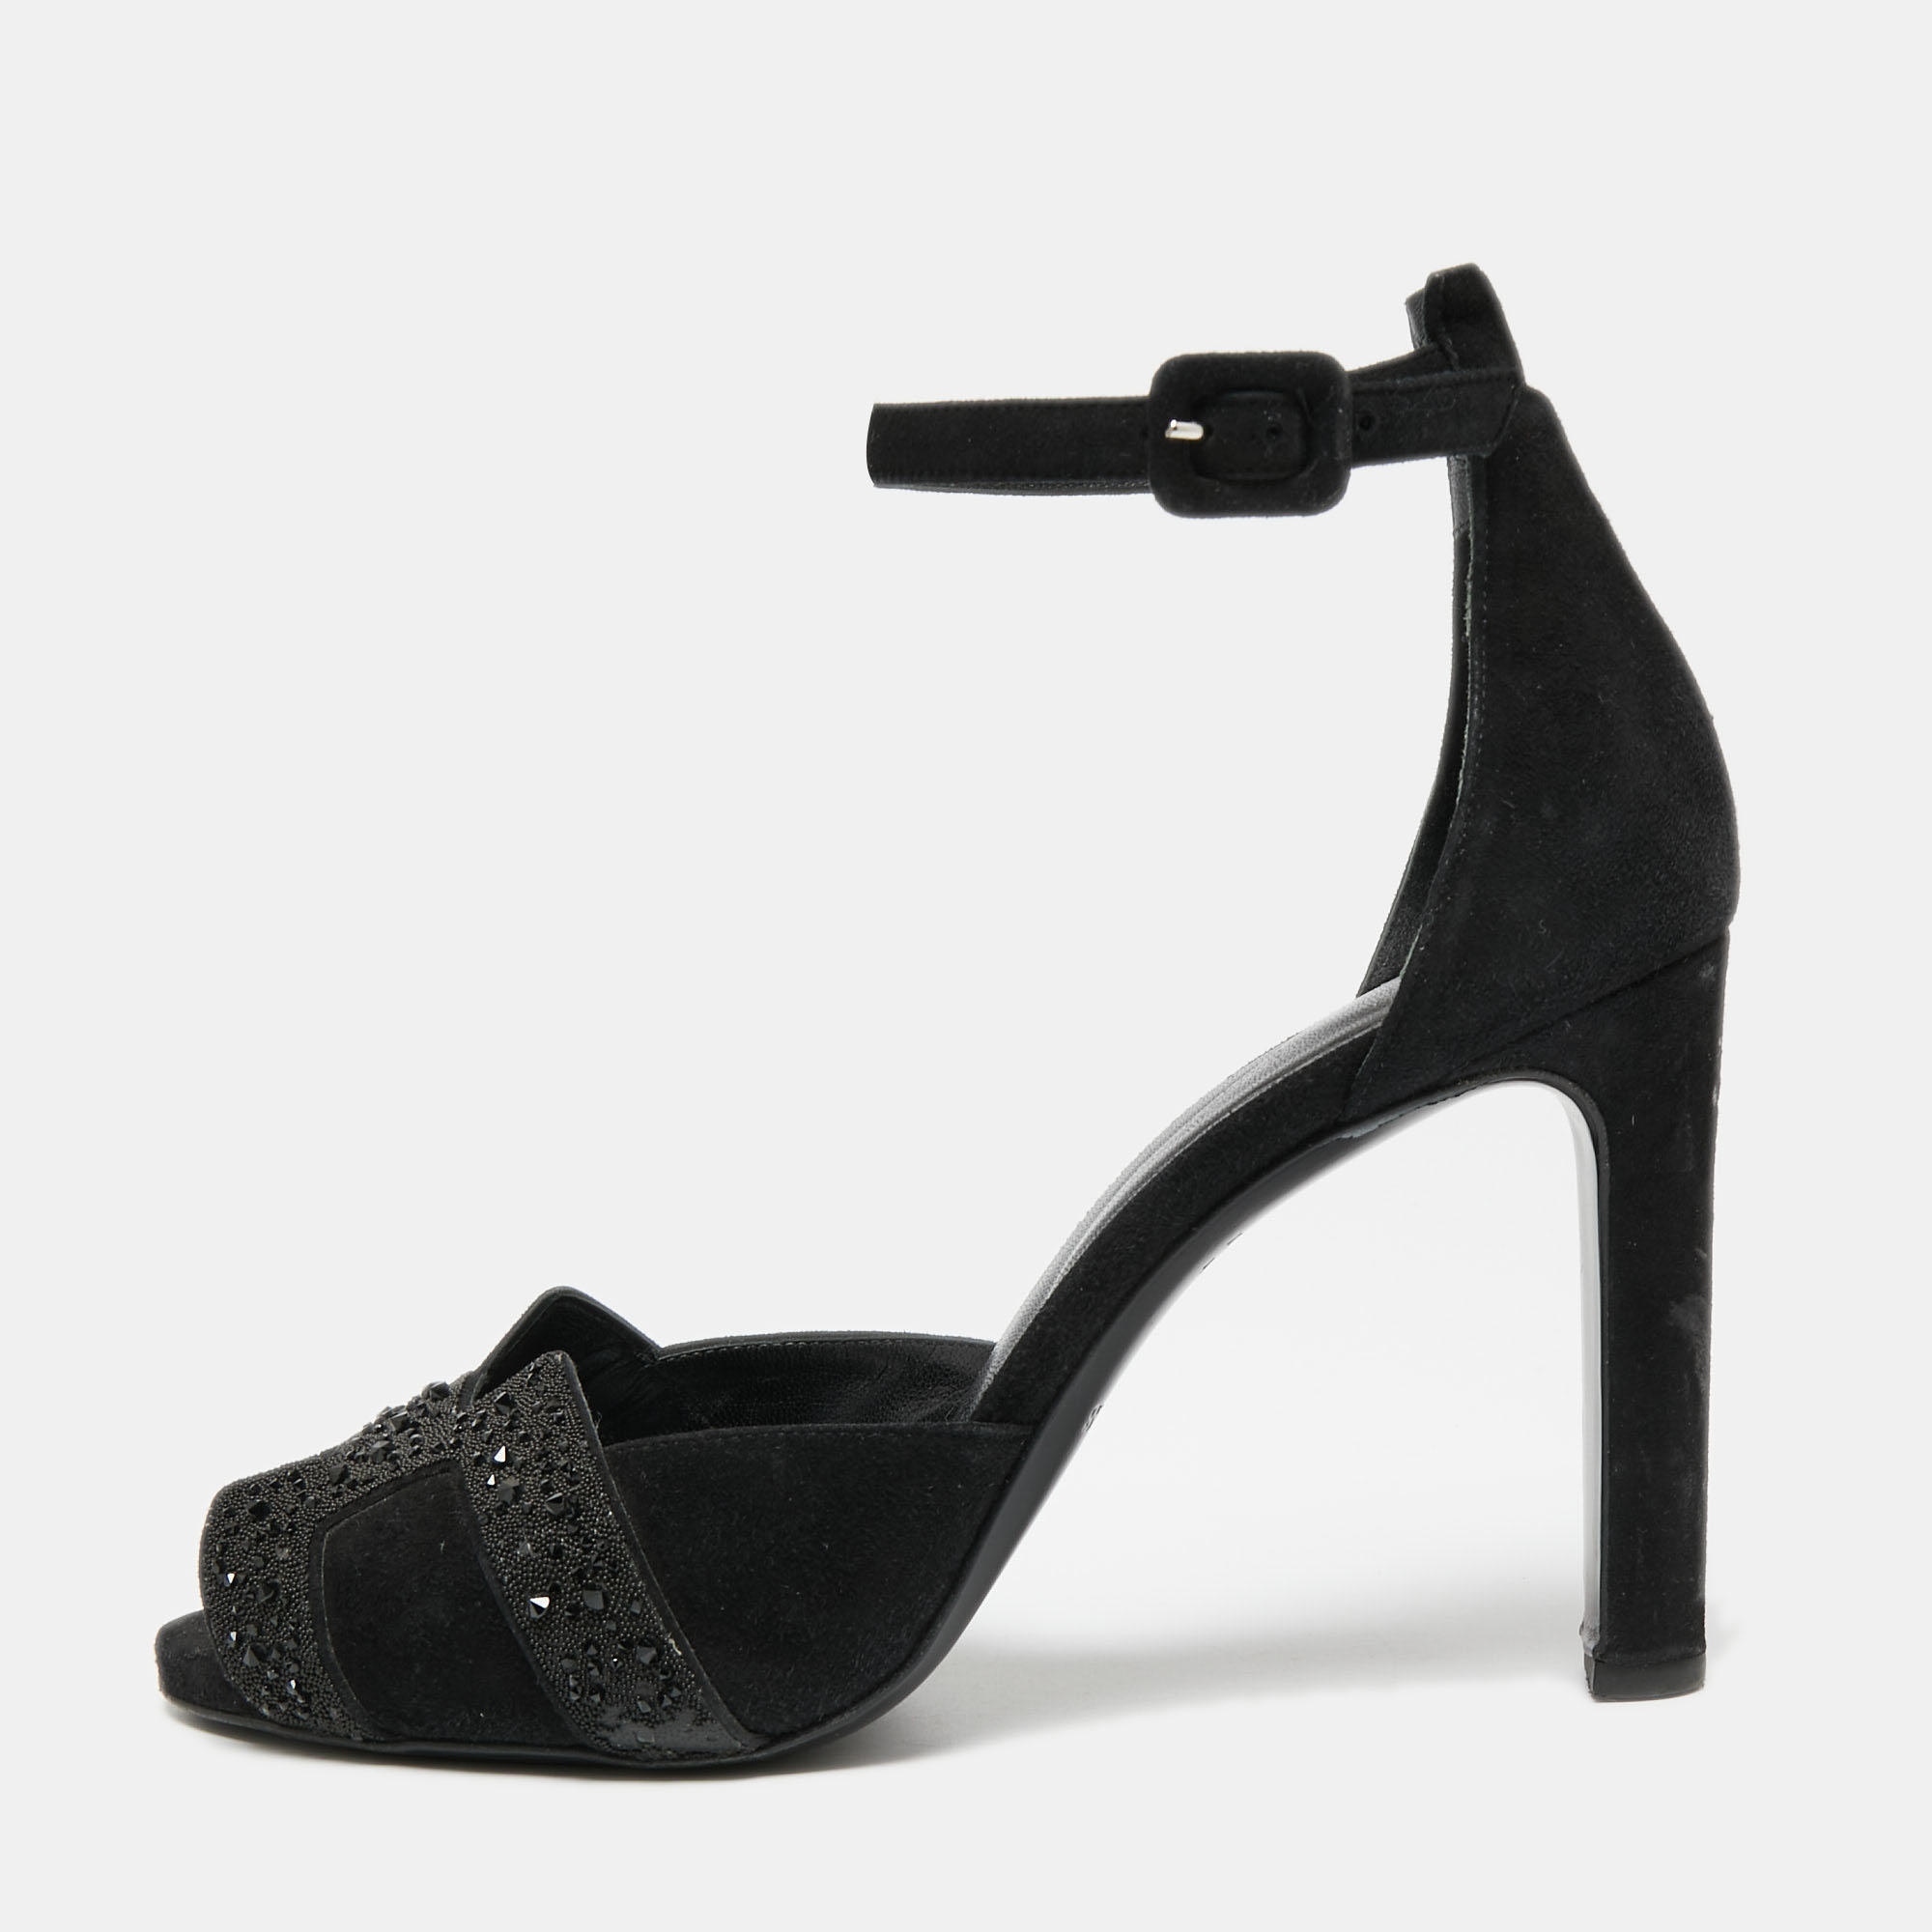 Hermes Black Suede And Glitter Embellished Krystal Ankle Strap Sandals Size 39